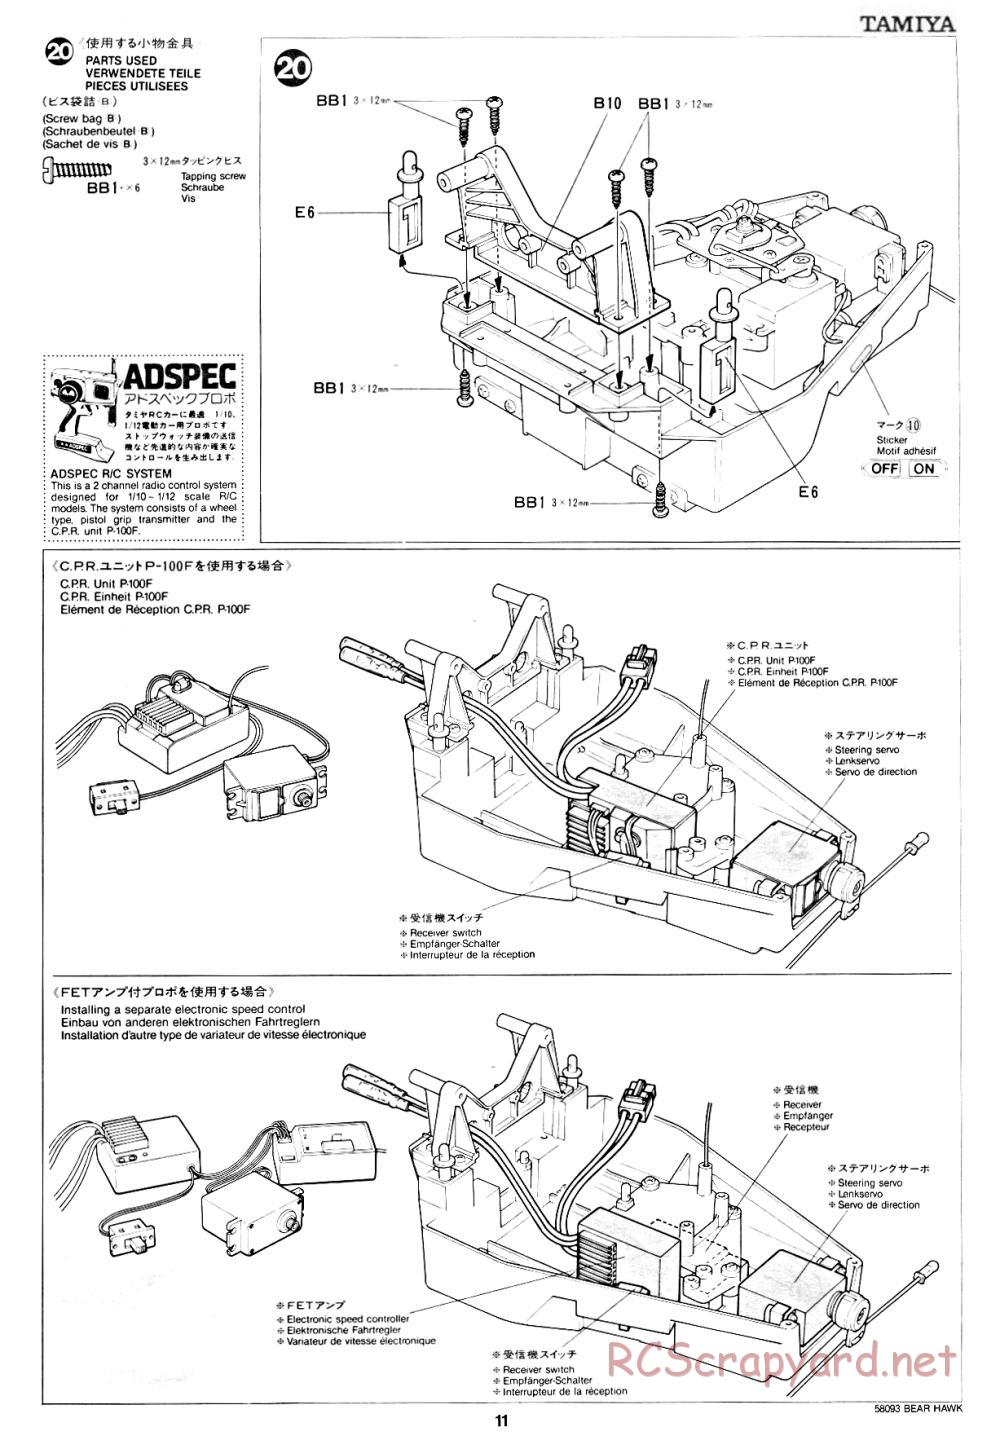 Tamiya - Bear Hawk - 58093 - Manual - Page 11